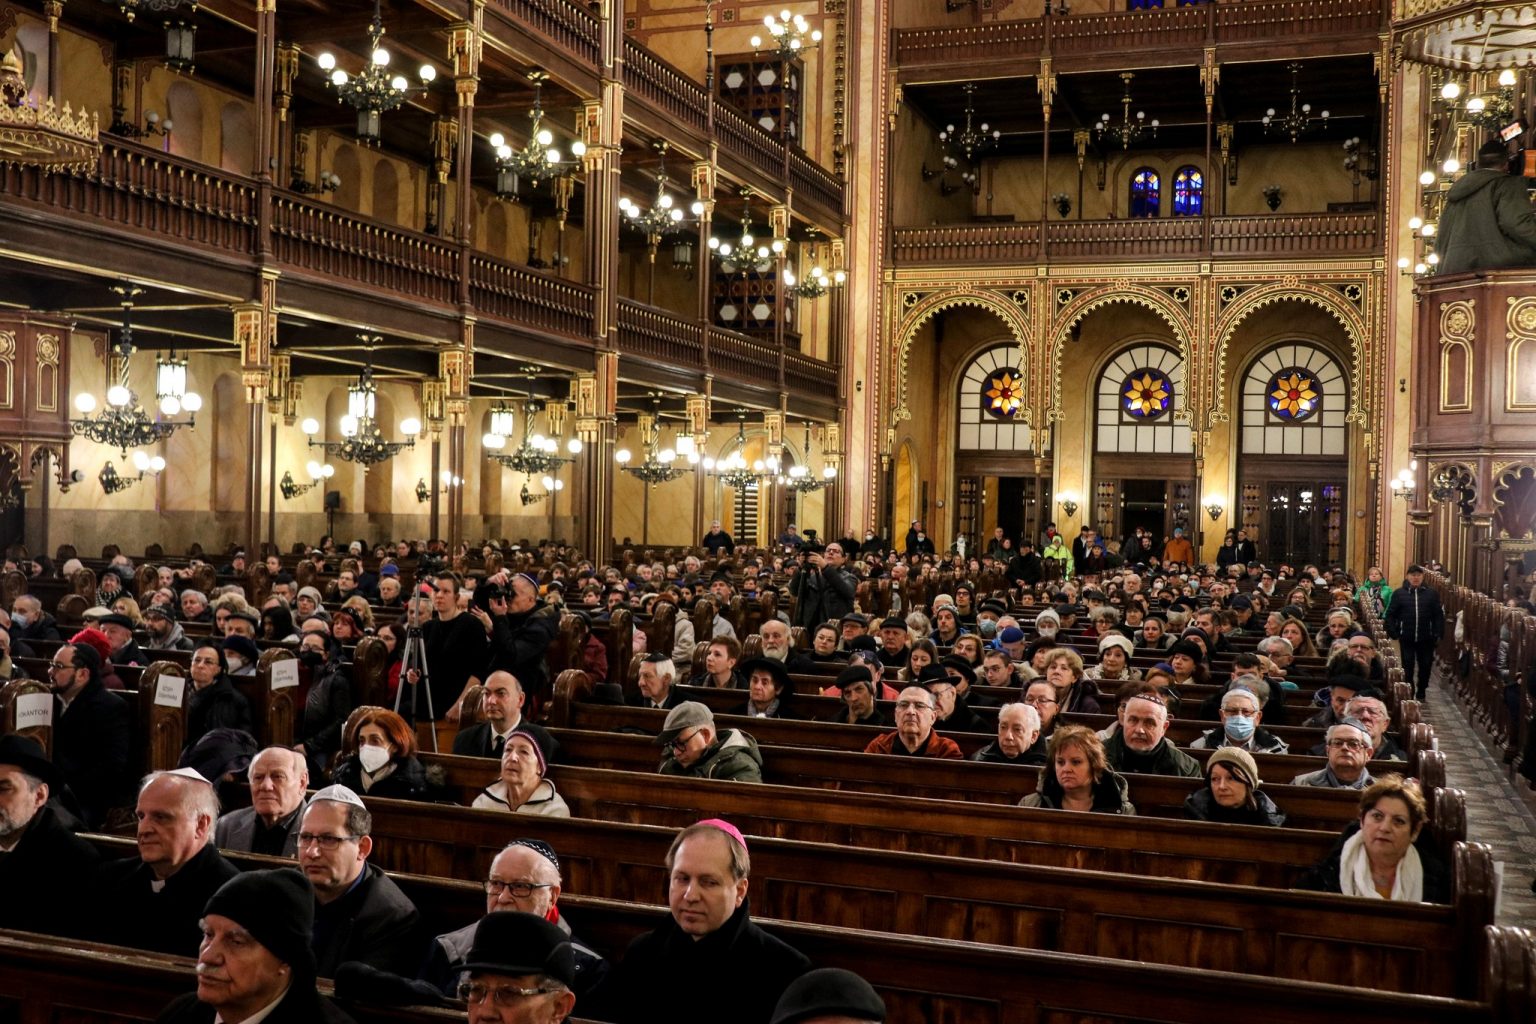 Maďarsko je pro židovskou komunitu jednou z nejbezpečnějších zemí v Evropě